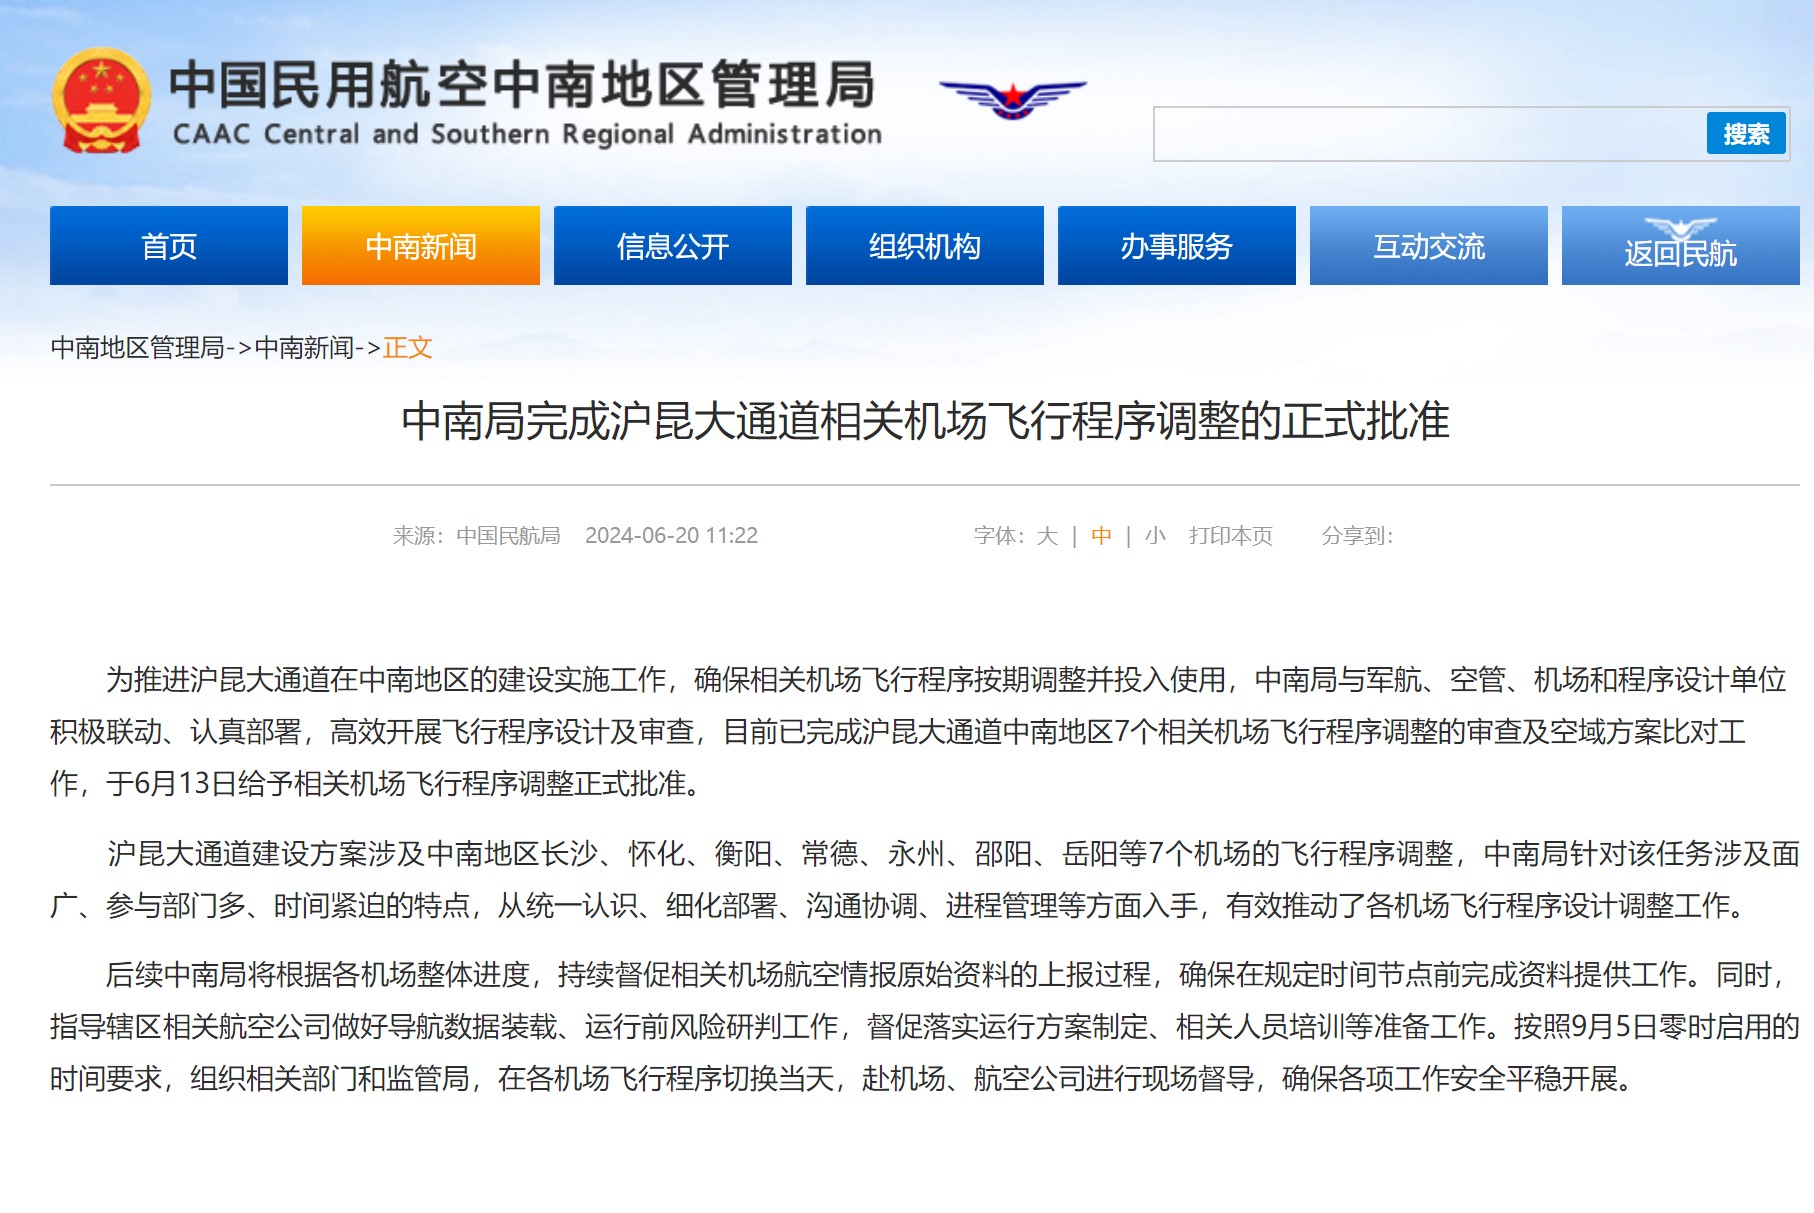 中南局完成沪昆大通道相关机场飞行程序调整的正式批准